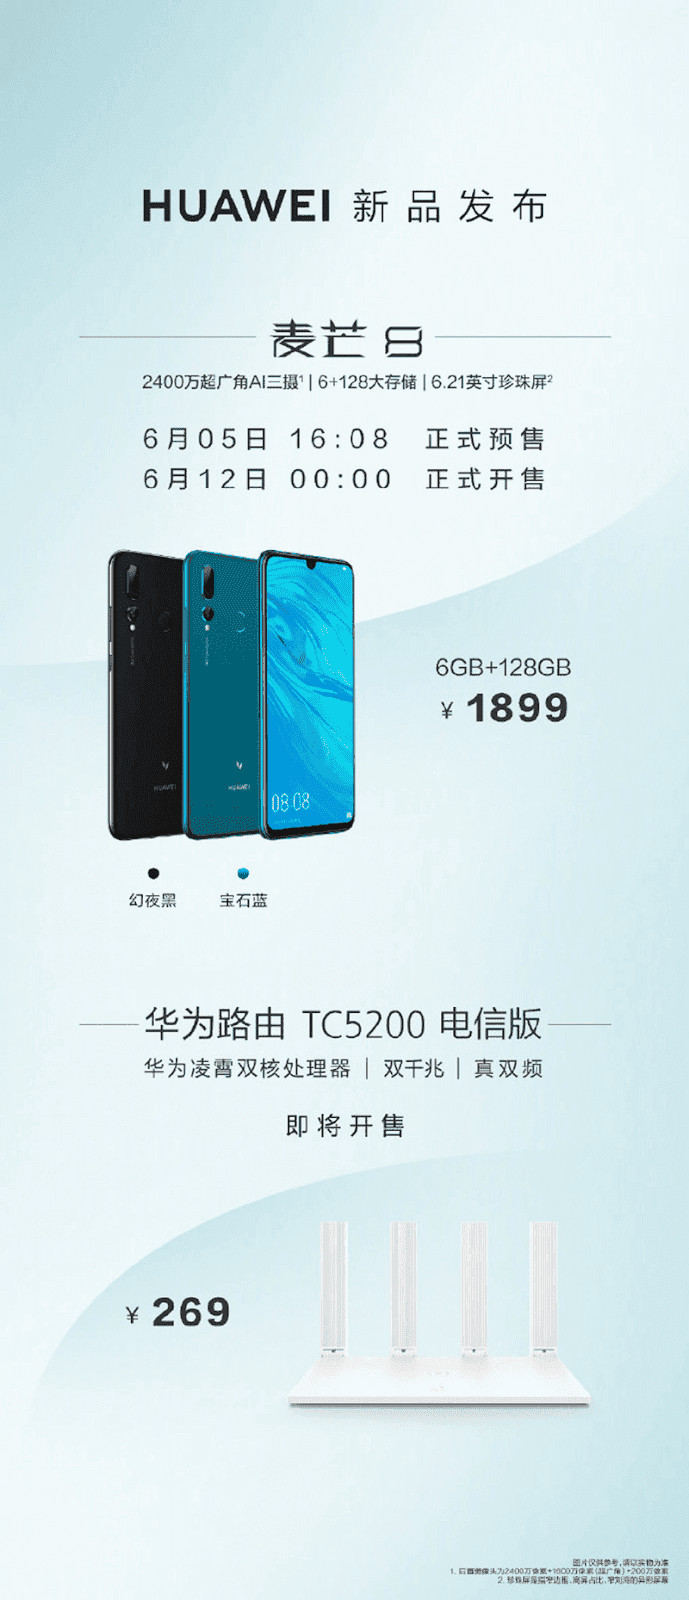 Huawei Maimang 8 ra mắt: Kirin 710, 3 camera sau, giá 275 USD ảnh 3